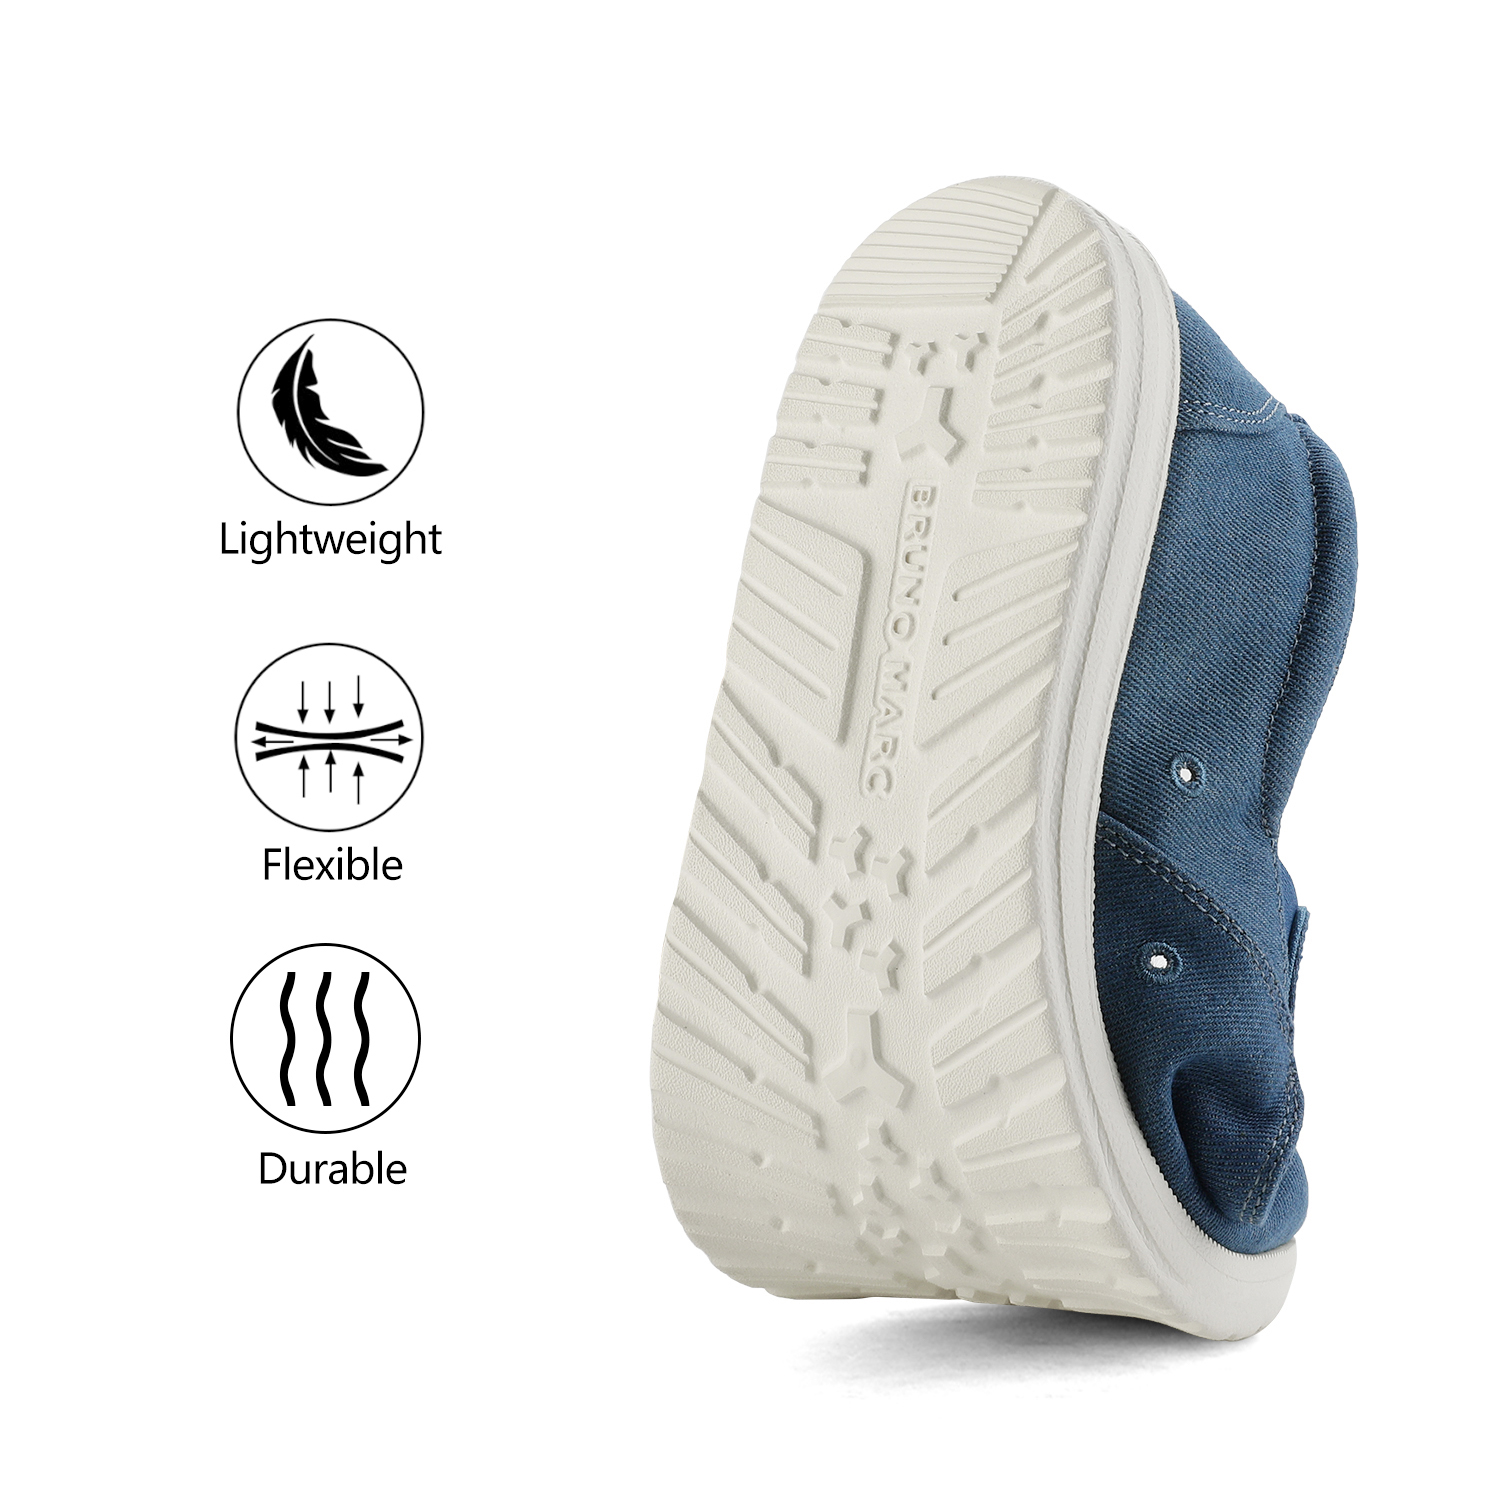 Bruno Marc Men's Slip On Loafer Walking Shoes SUNVENT-01 BLUE/DENIM size 8 - image 3 of 6